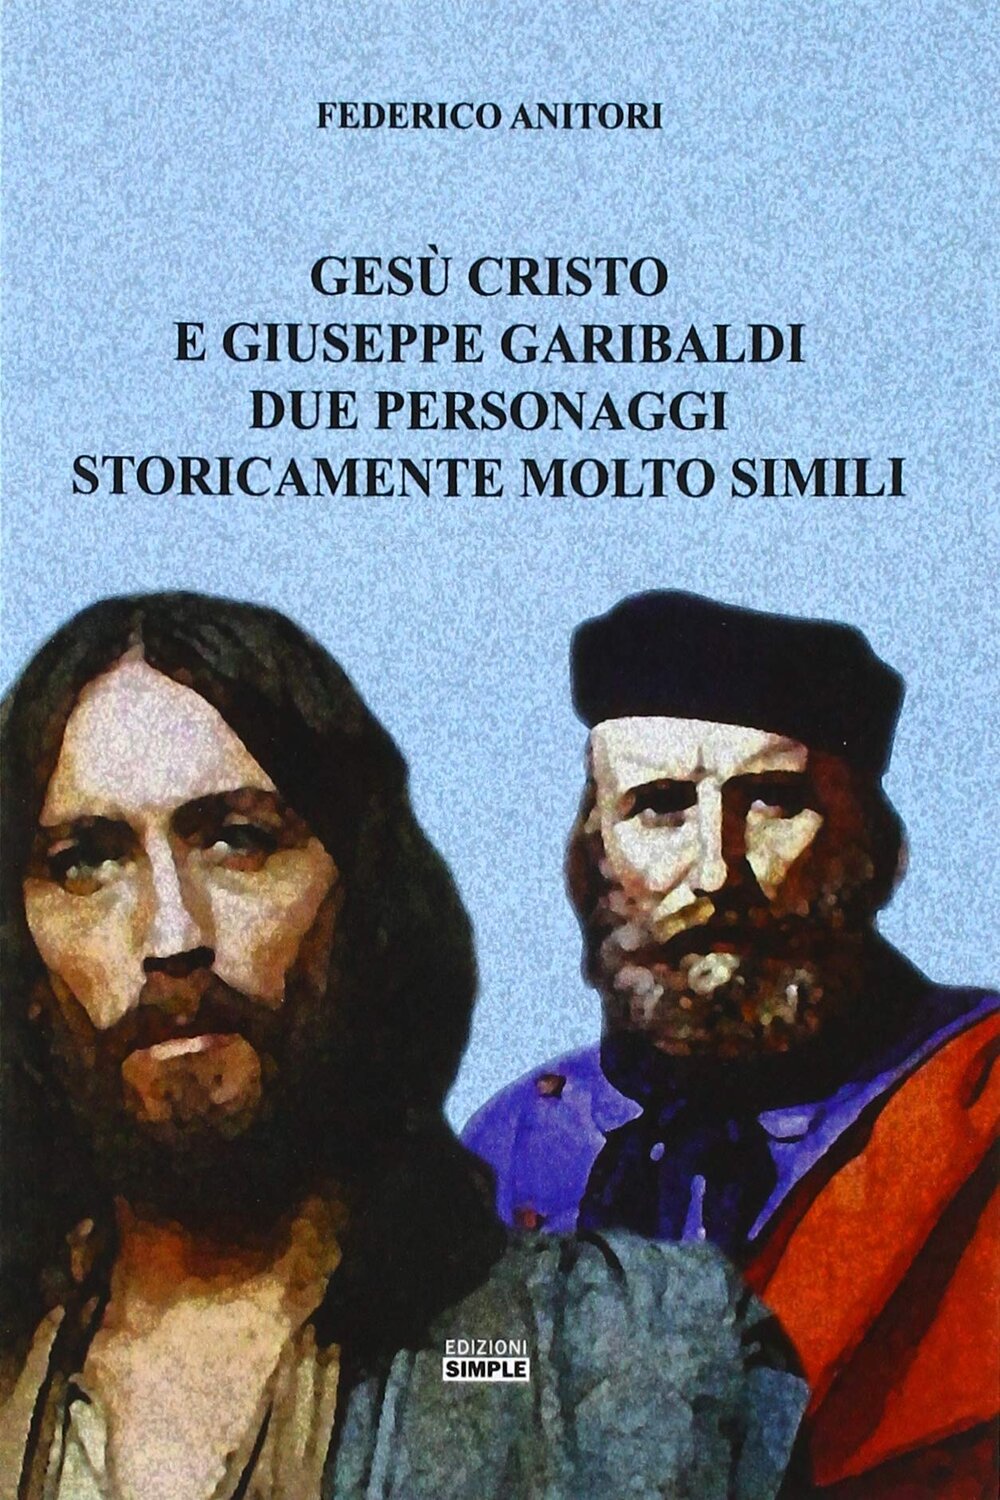 Gesù Cristo e Giuseppe Garibaldi due personaggi storicamente molto simili